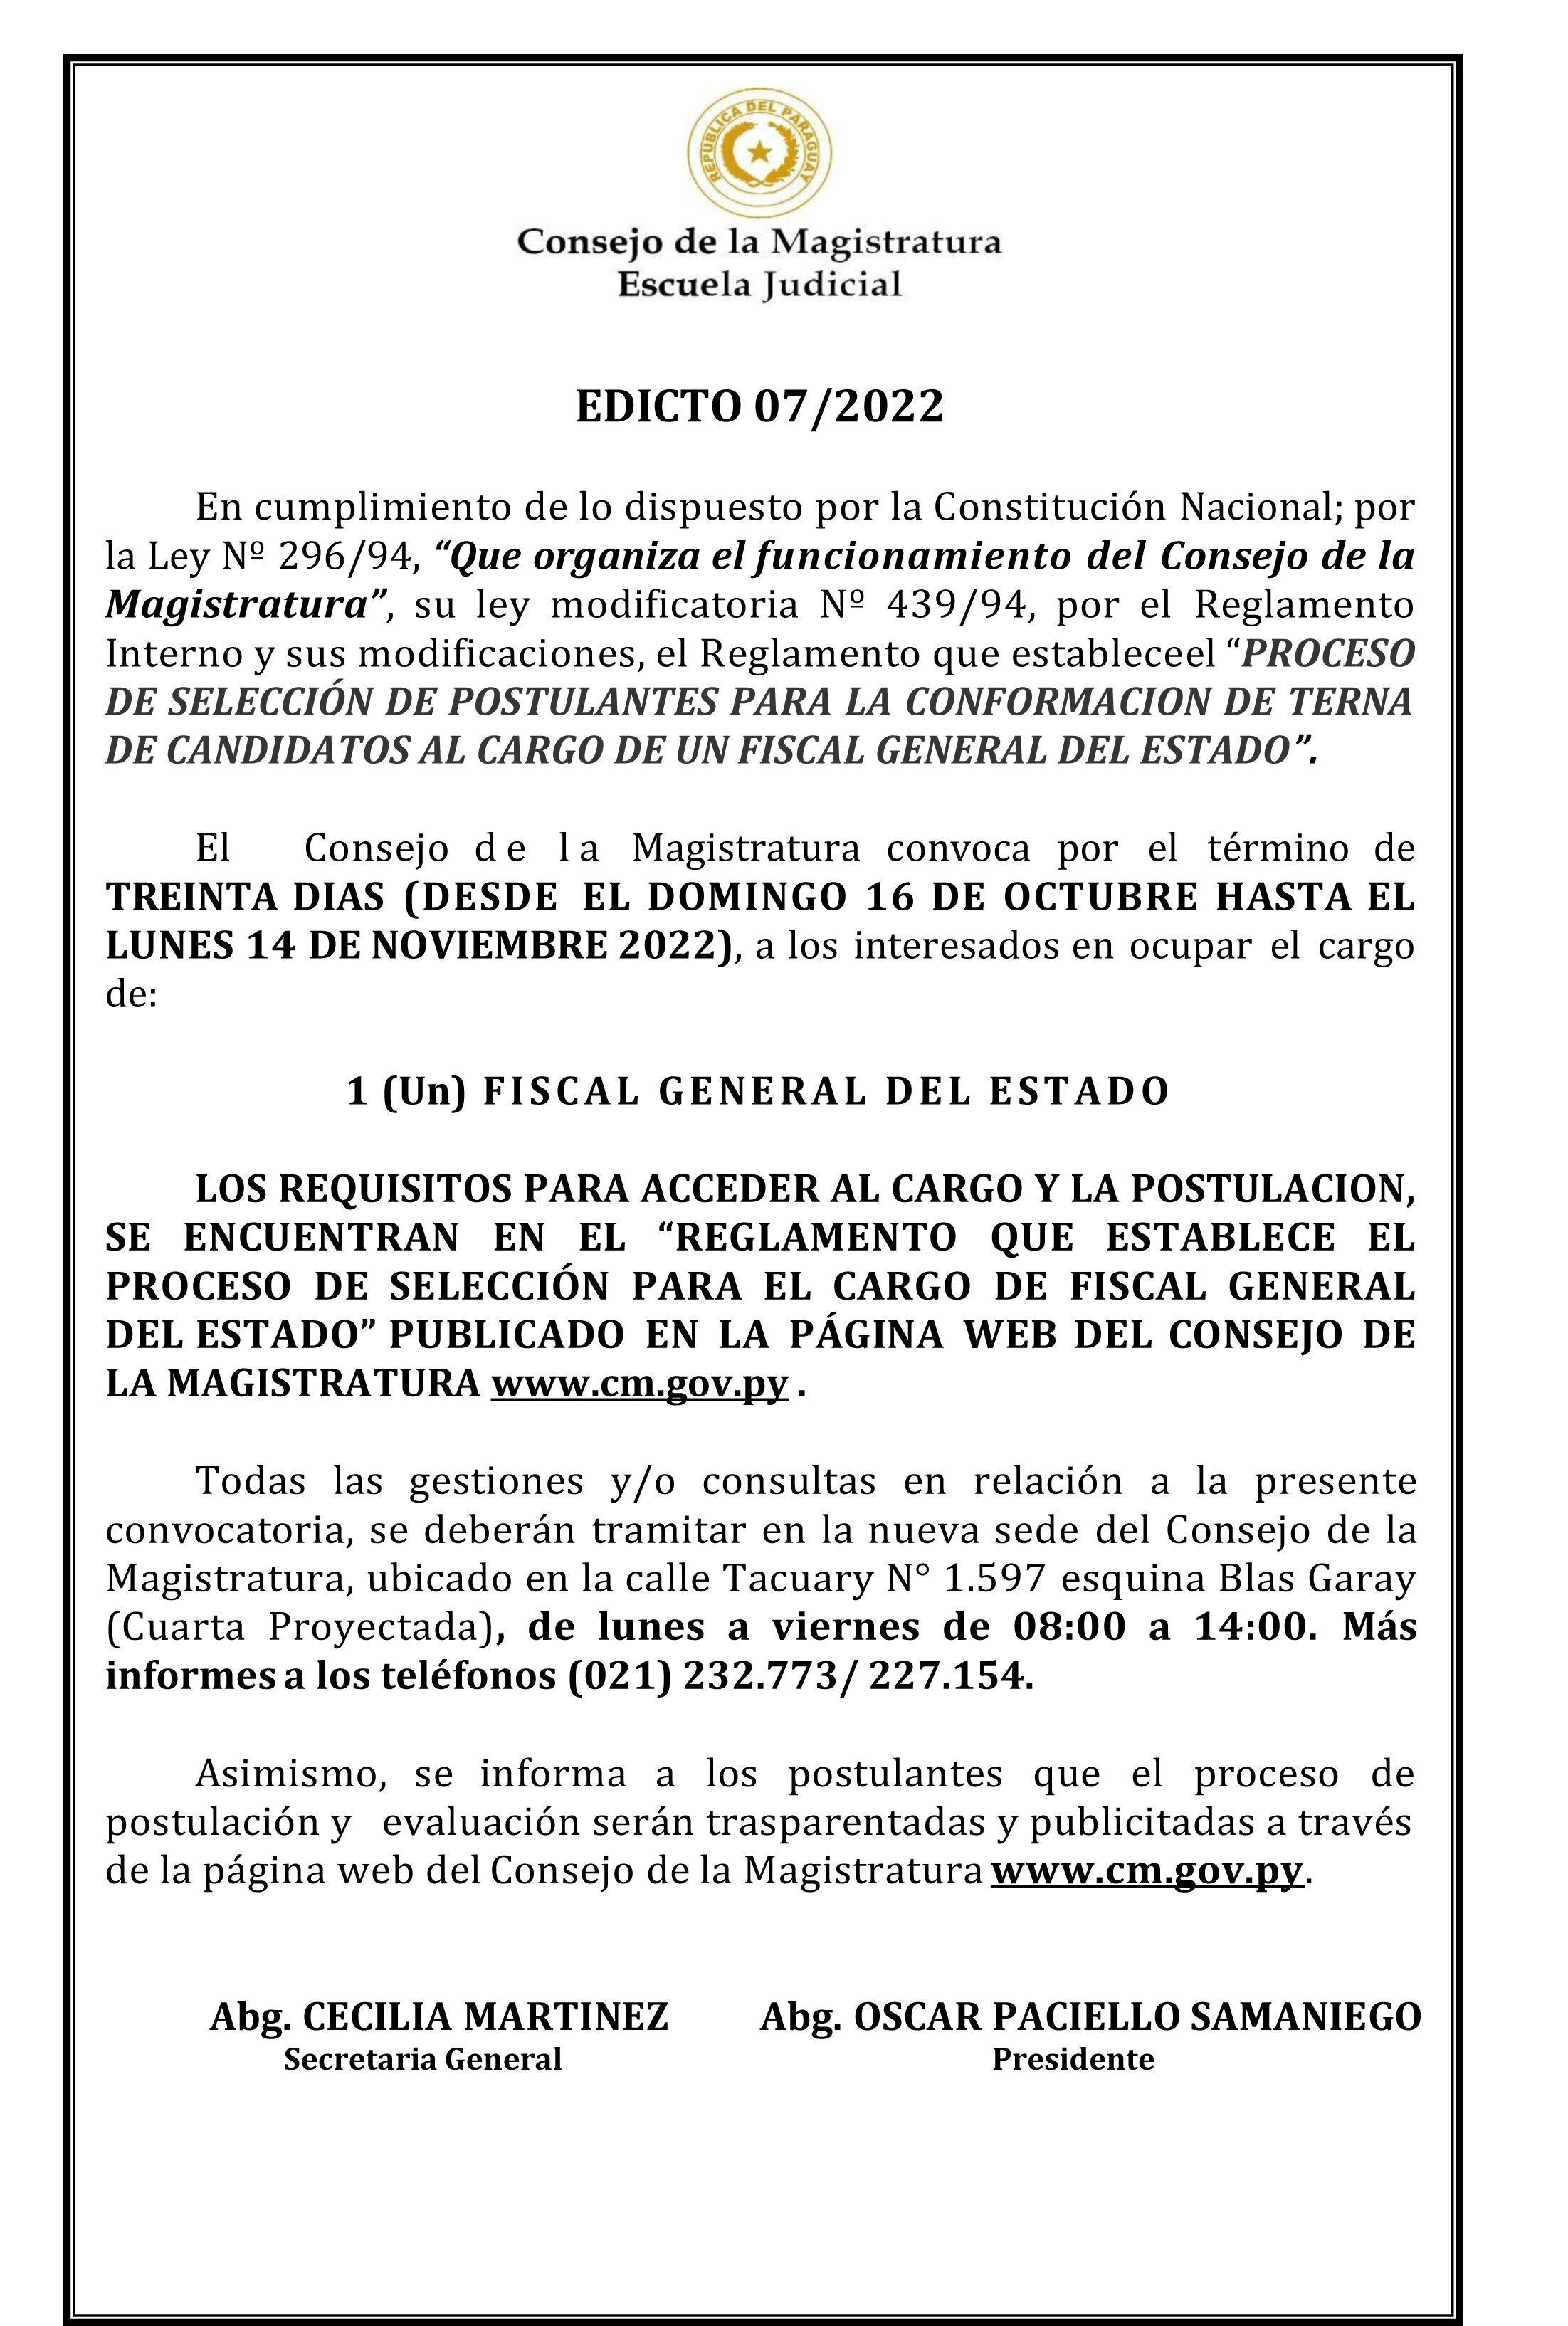 Edicto N° 7/2022 para el cargo de fiscal general del Estado donde consta que las inscripciones son de lunes a viernes y de 8:00 a 14:00.